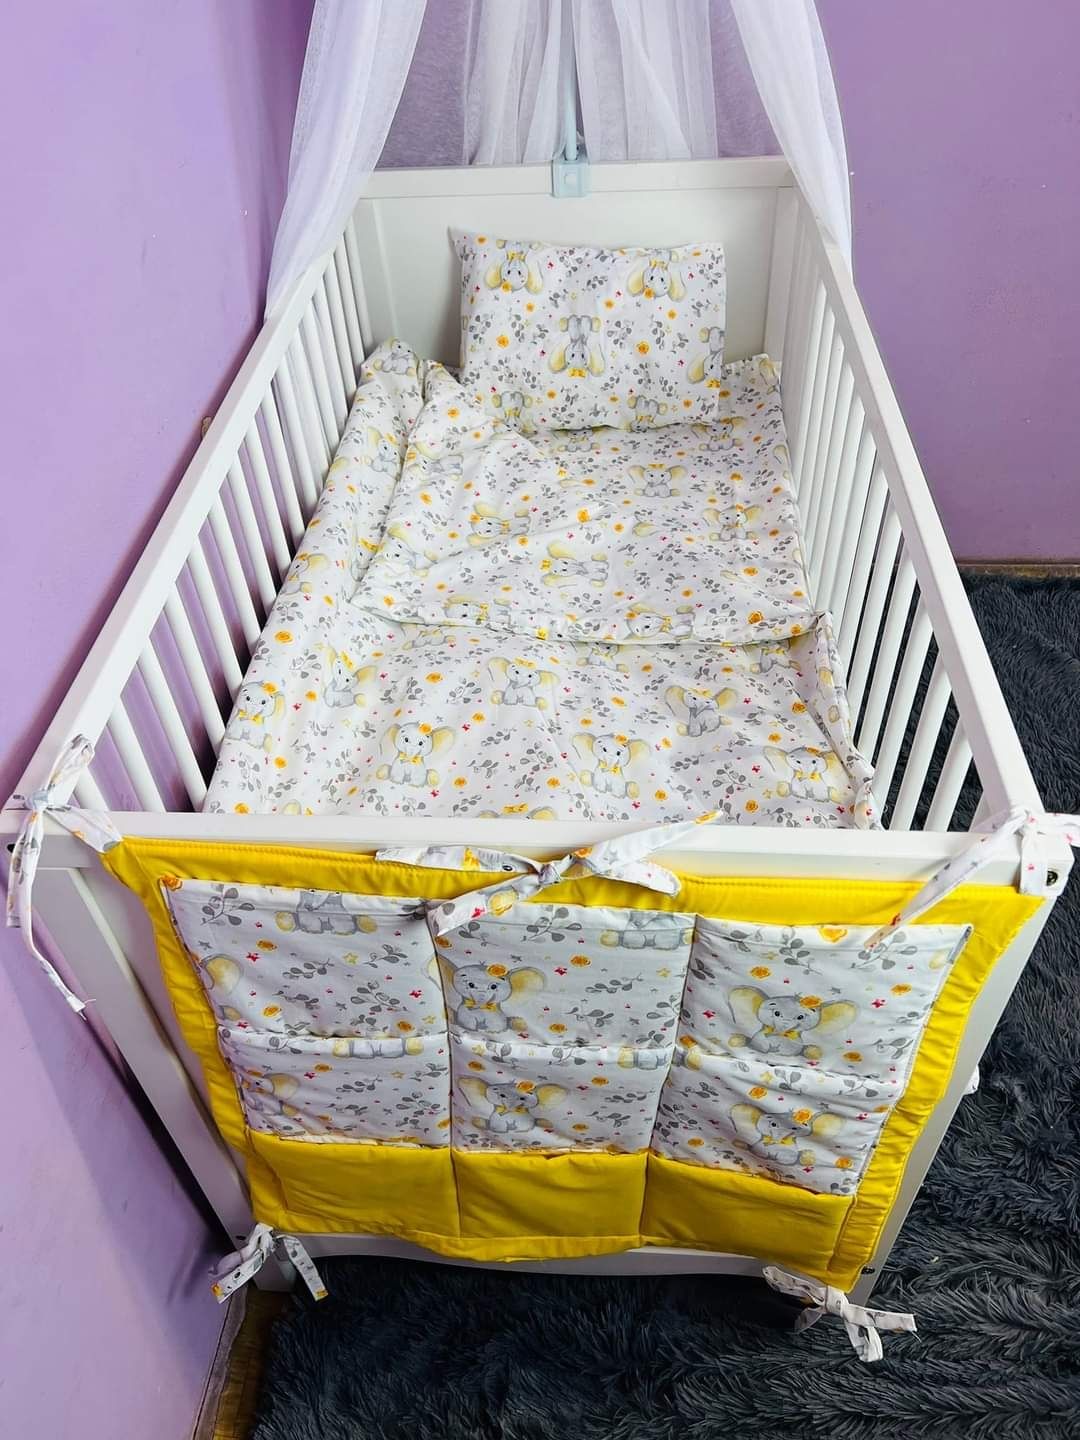 Аксесоари за бебешко легло - спални комплекти, обиколници,органайзер